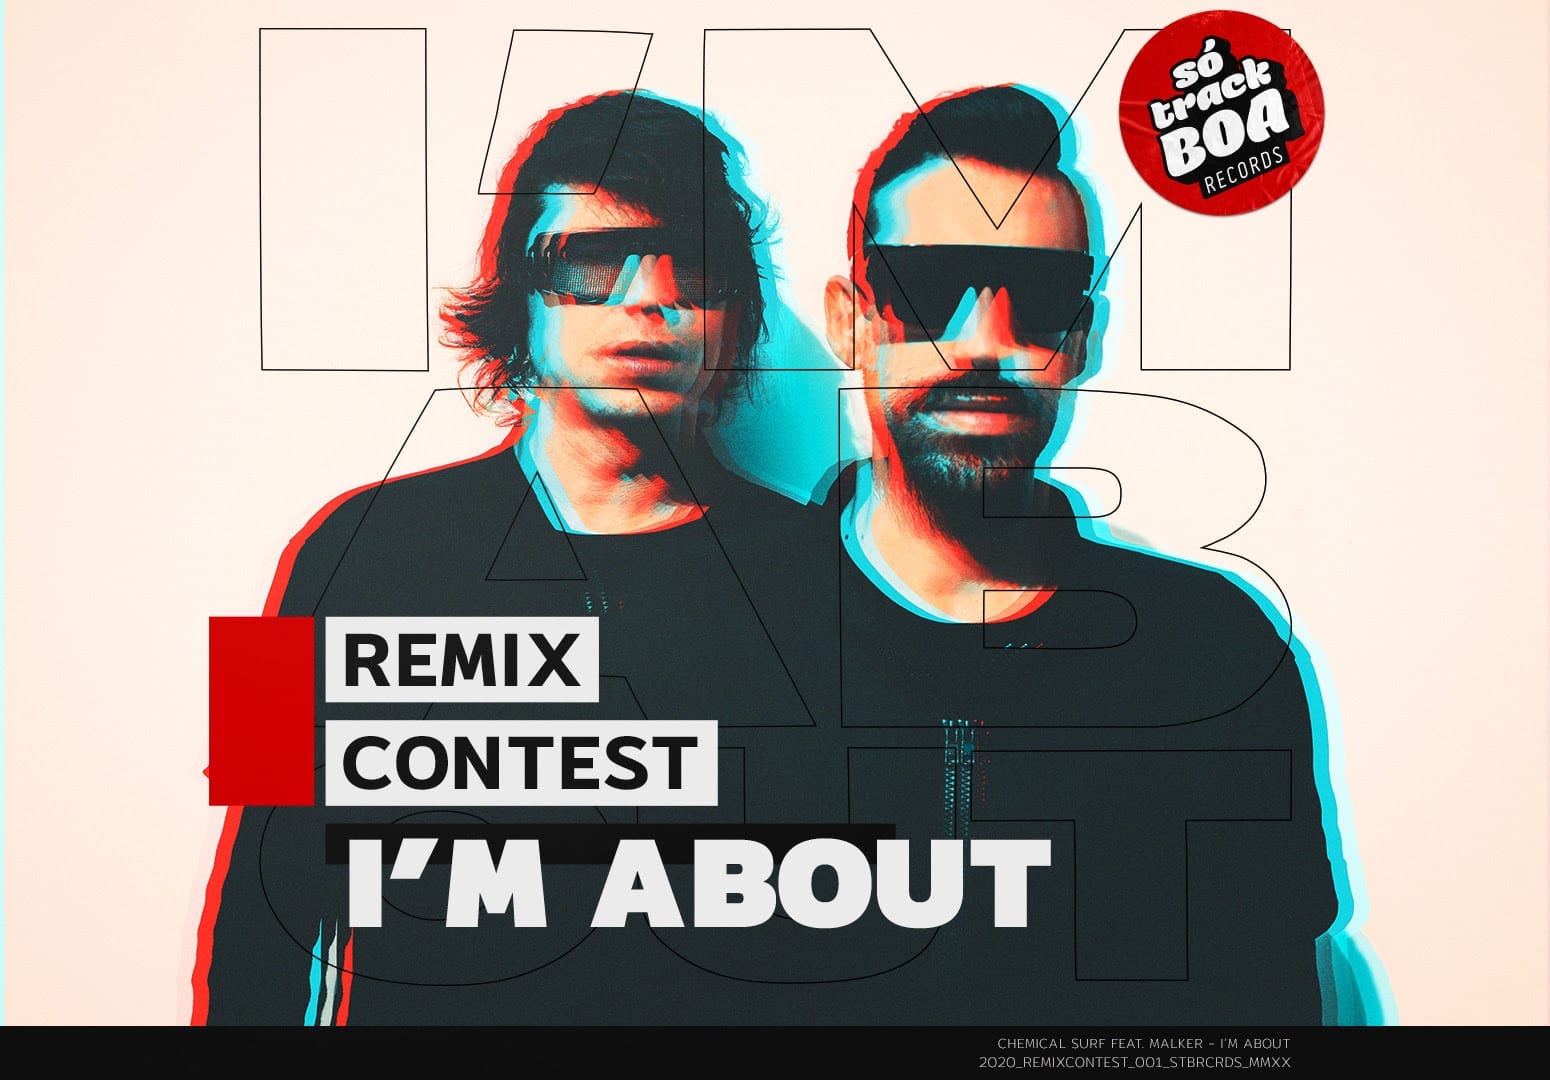 Chemical Surf e Só Track Boa Records lançam remix contest de “Im About”